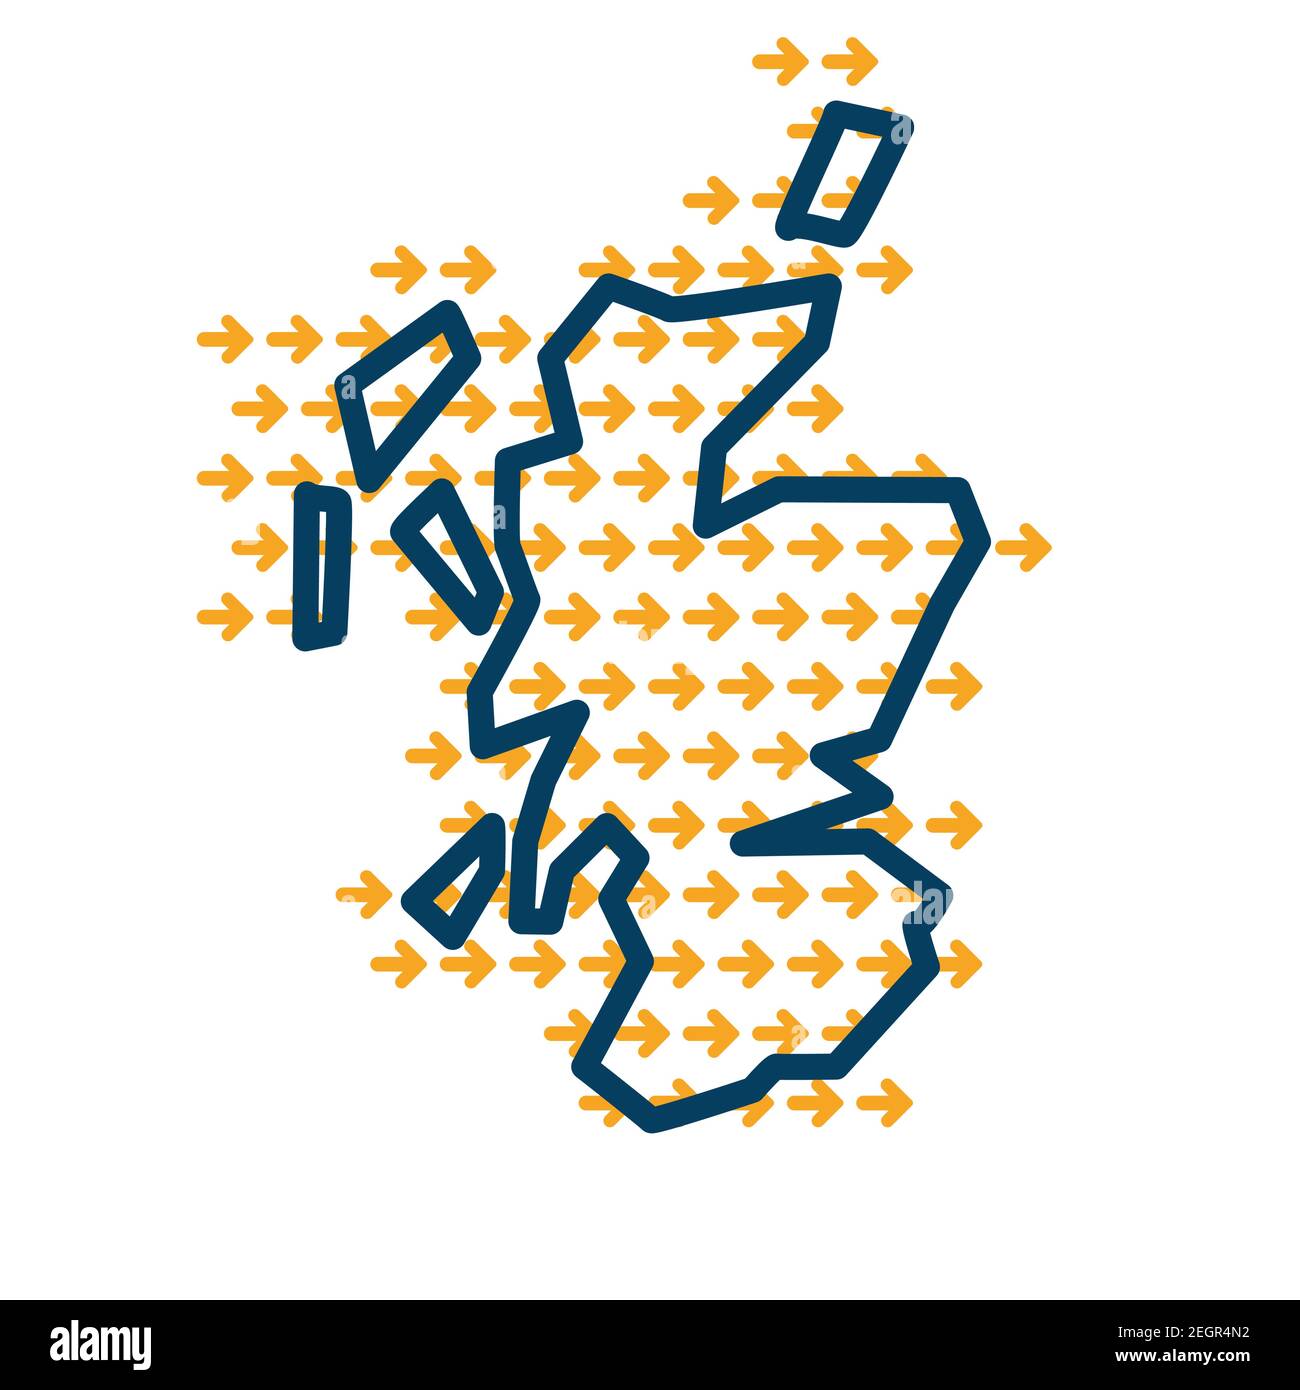 Scozia semplice mappa con frecce di direzione gialle. Illustrazione Vettoriale